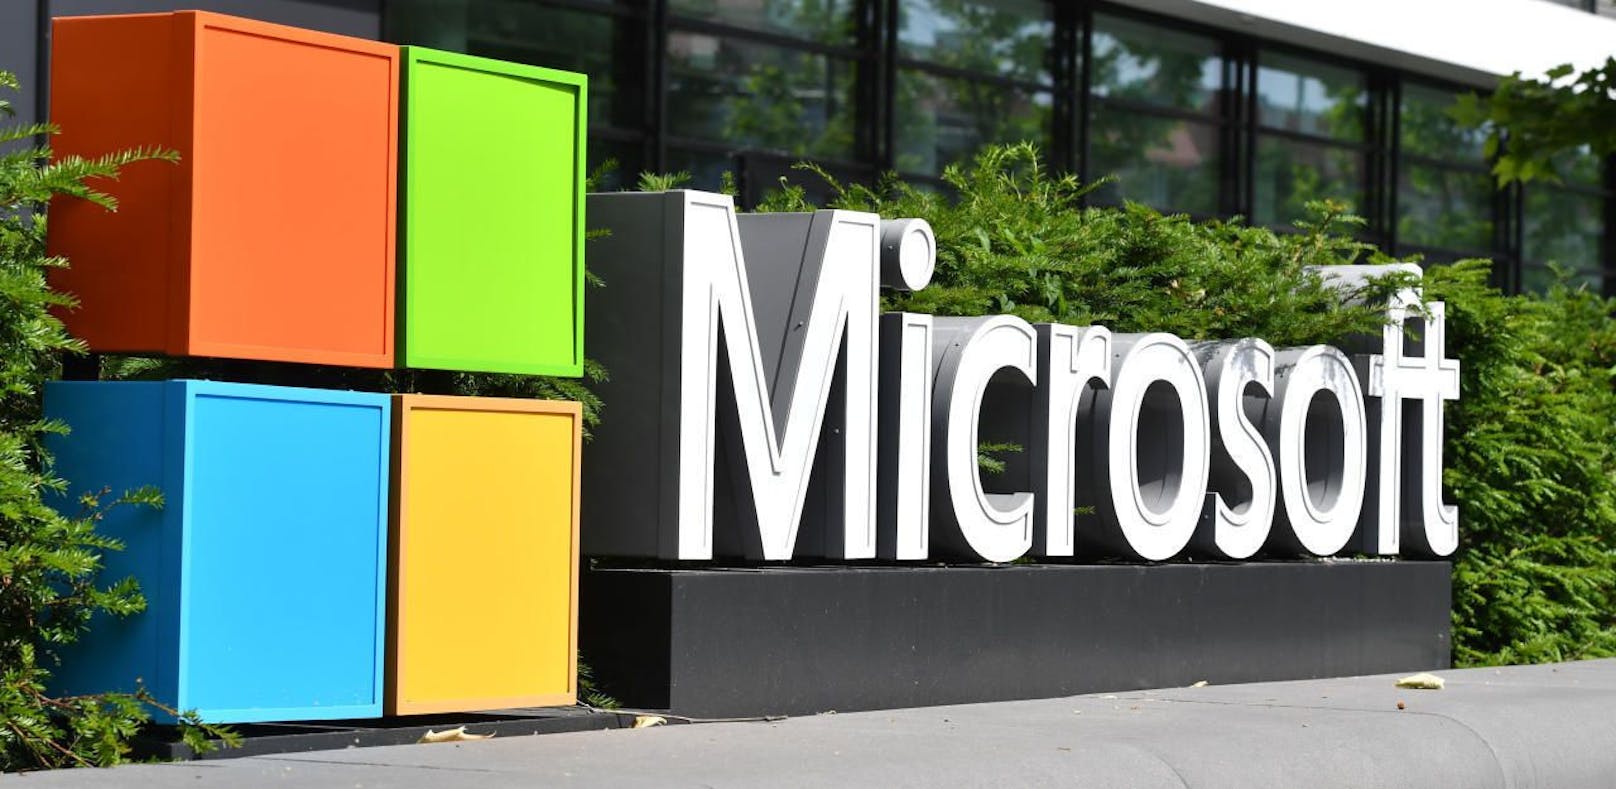 Microsoft kündigt an, dass es bis 2030 CO2-negativ werden will